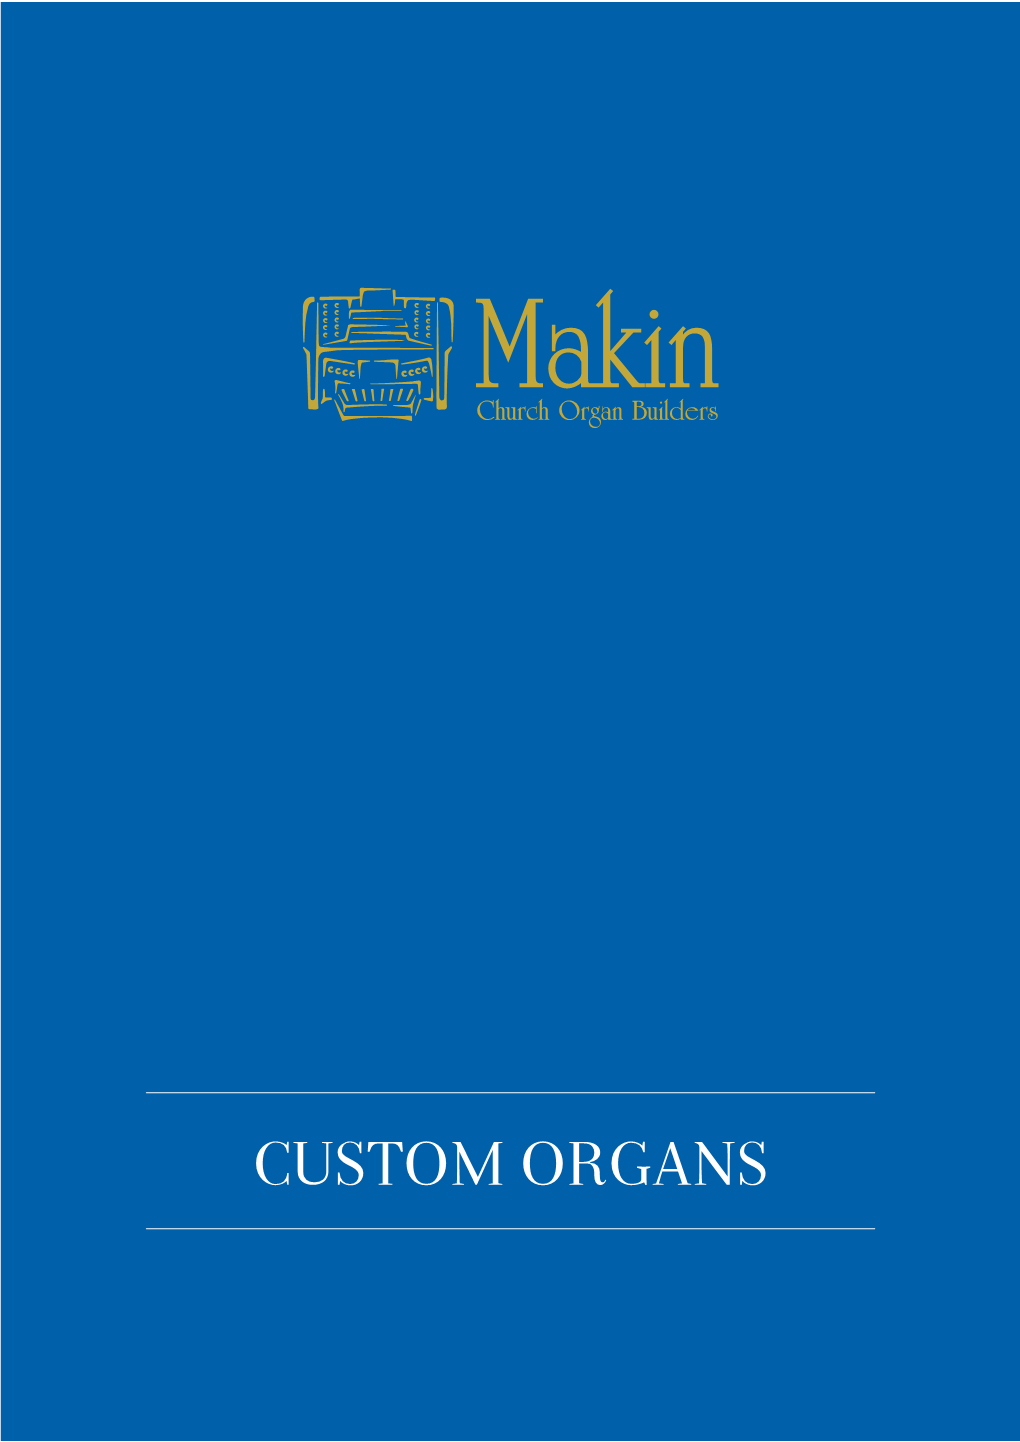 Custom Organs